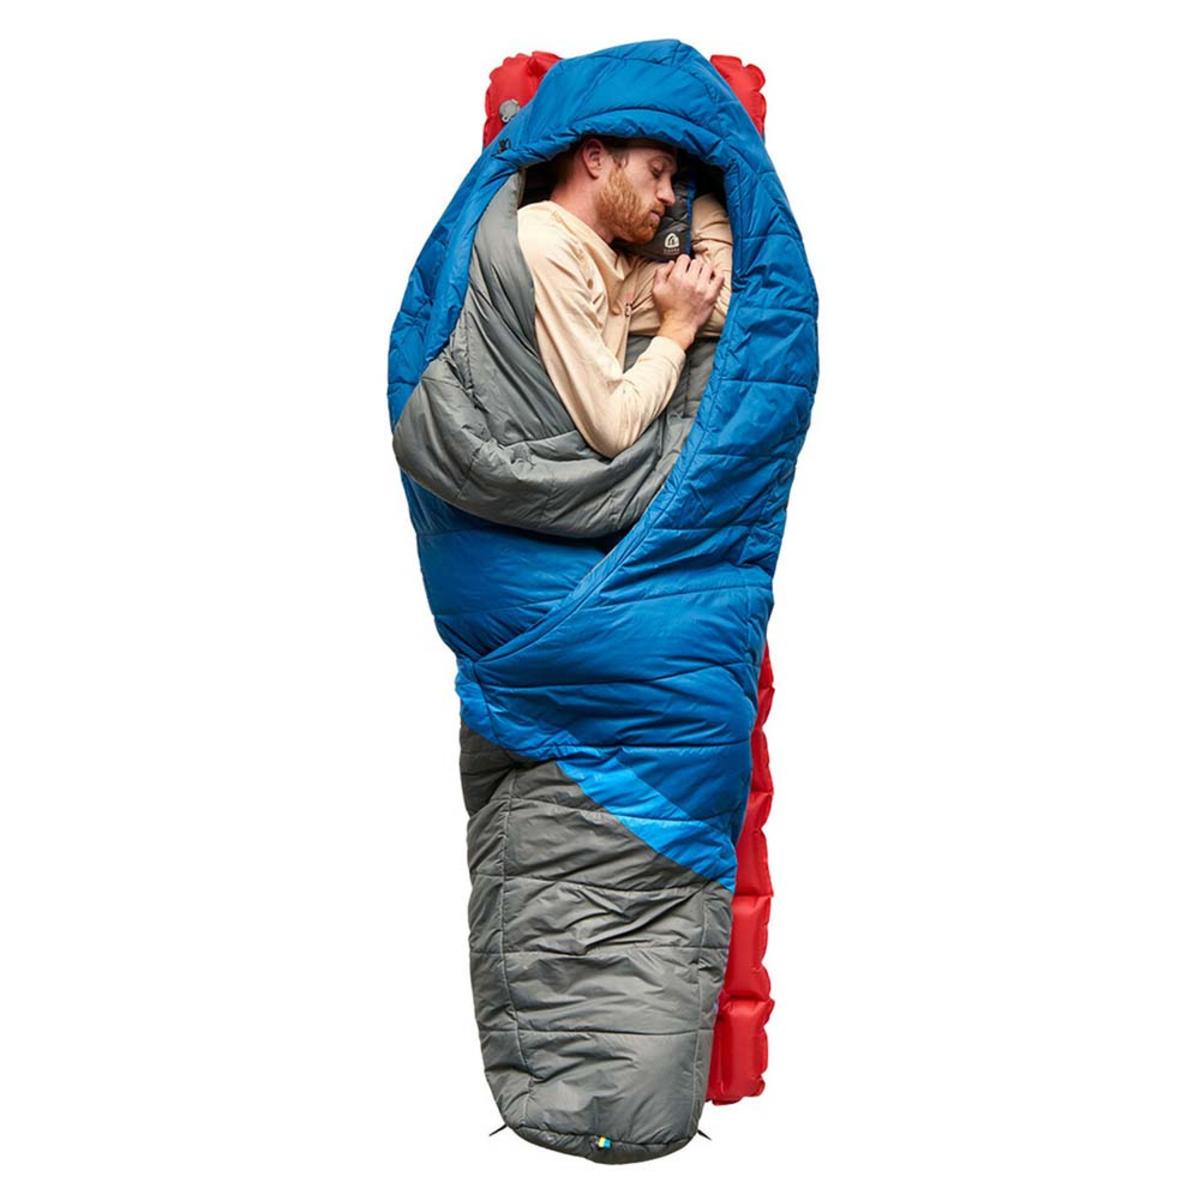 Sierra Designs Night Cap 20 Degree Sleeping Bag - Long